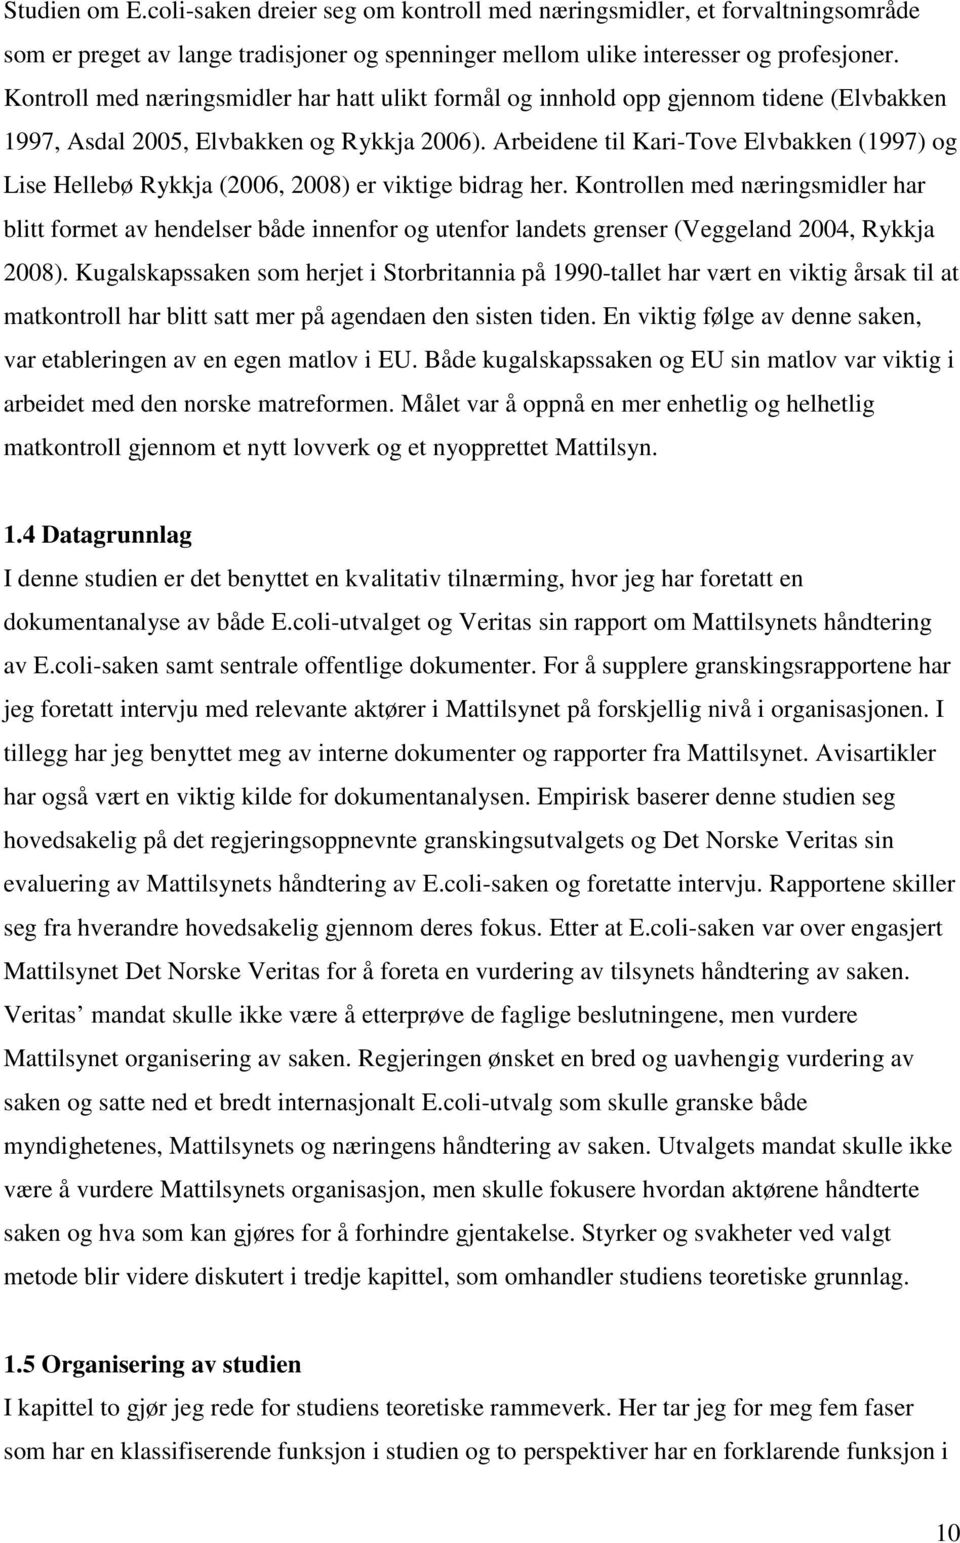 Arbeidene til Kari-Tove Elvbakken (1997) og Lise Hellebø Rykkja (2006, 2008) er viktige bidrag her.